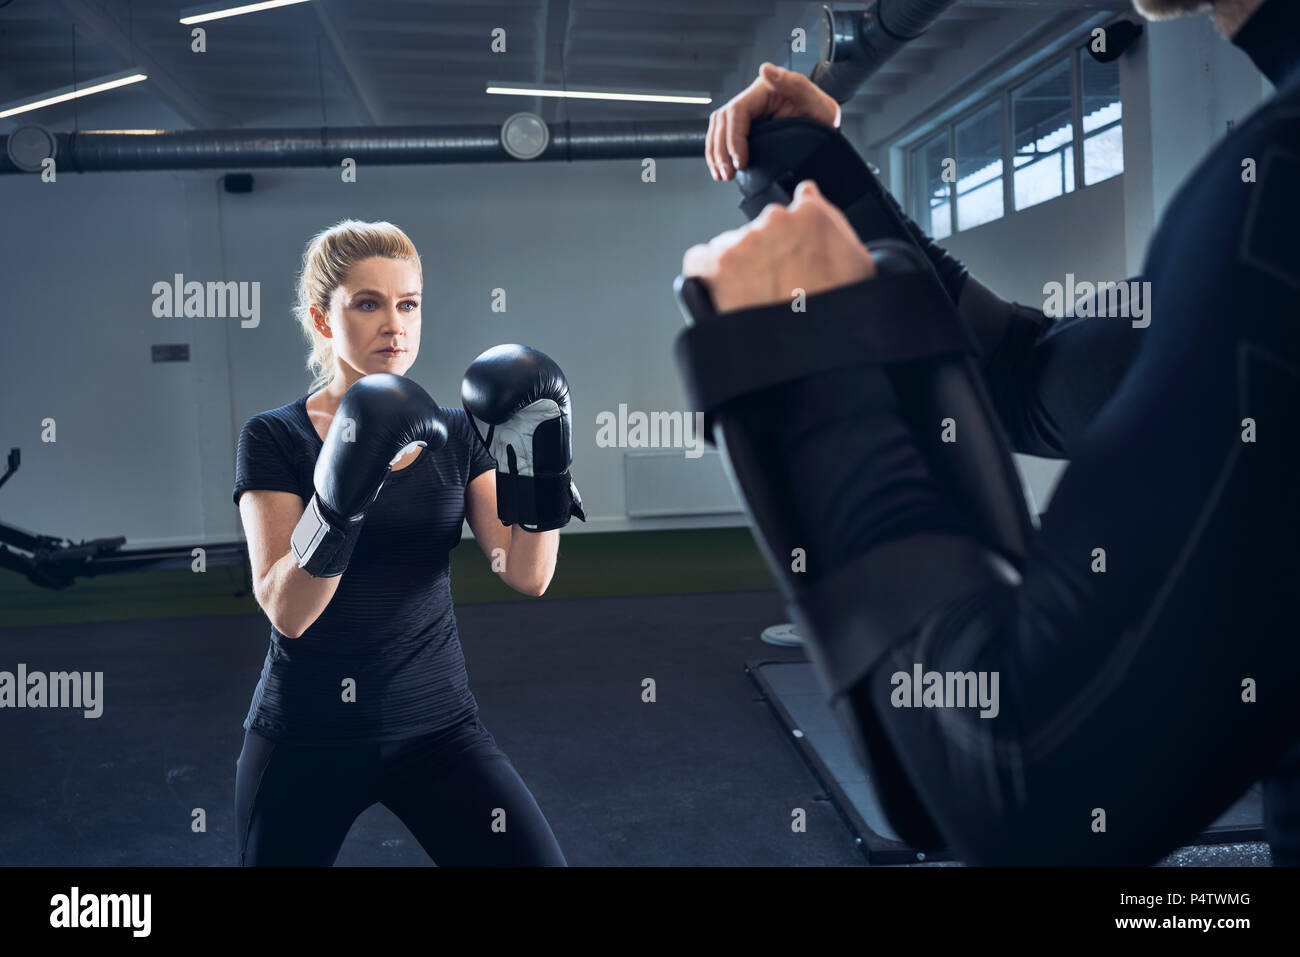 Mujer practicar boxeo en el gimnasio Foto de stock